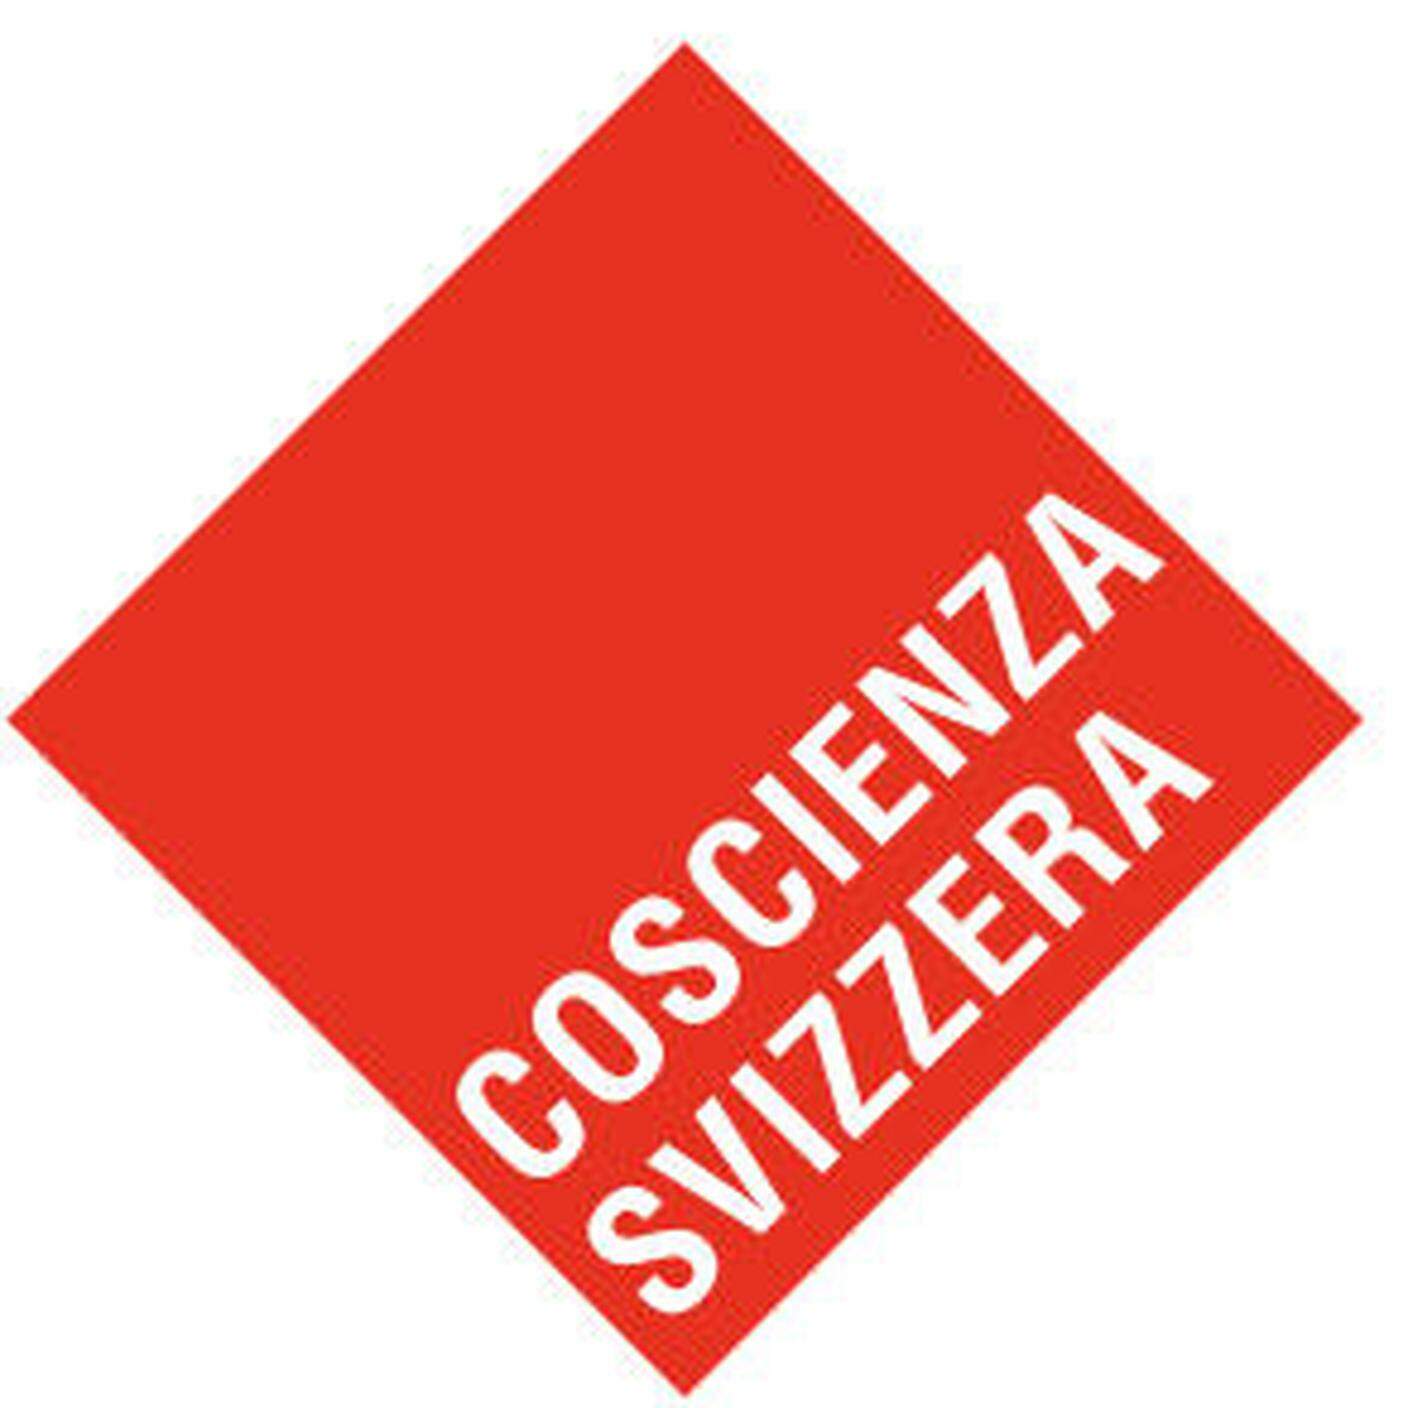 Coscienza Svizzera, logo